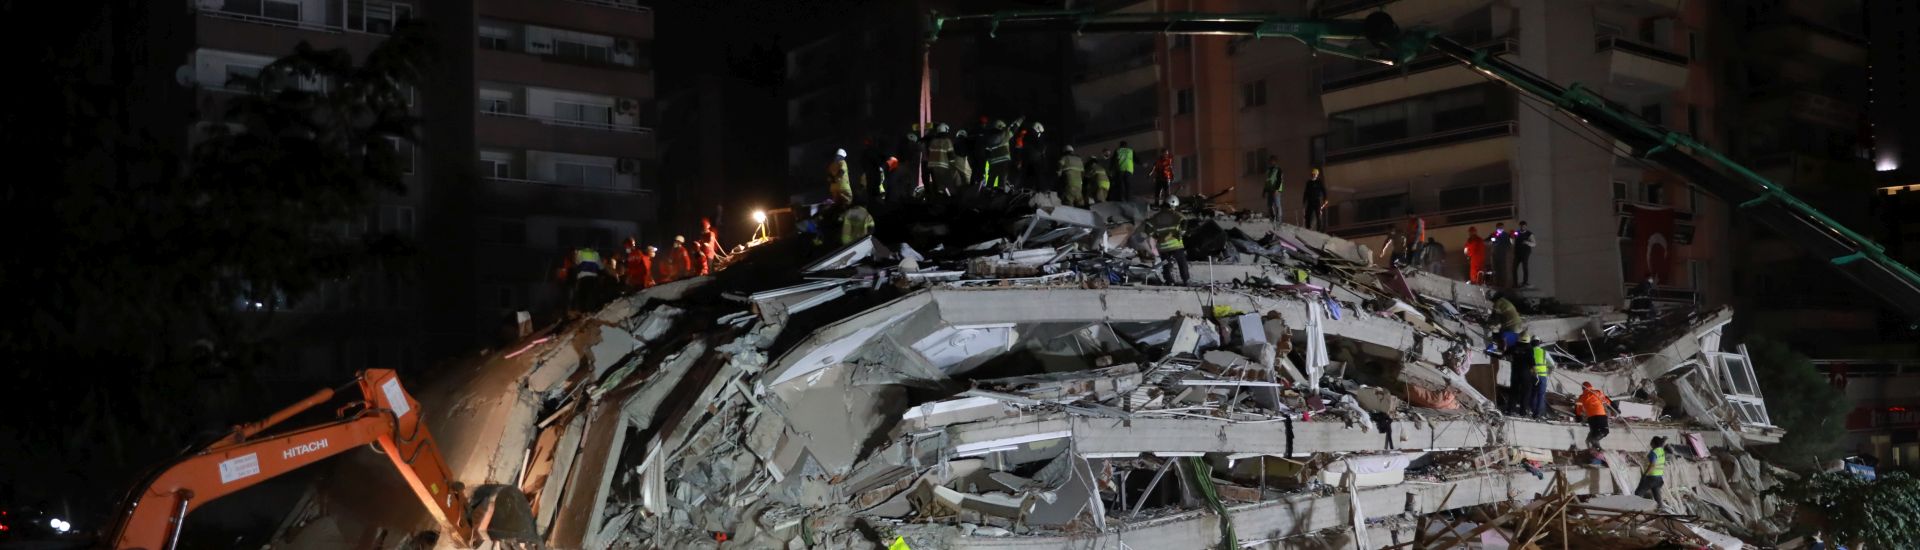 Trümmer und Helfer nach Erdbeben der Stärke 6,9 in der Ägäis